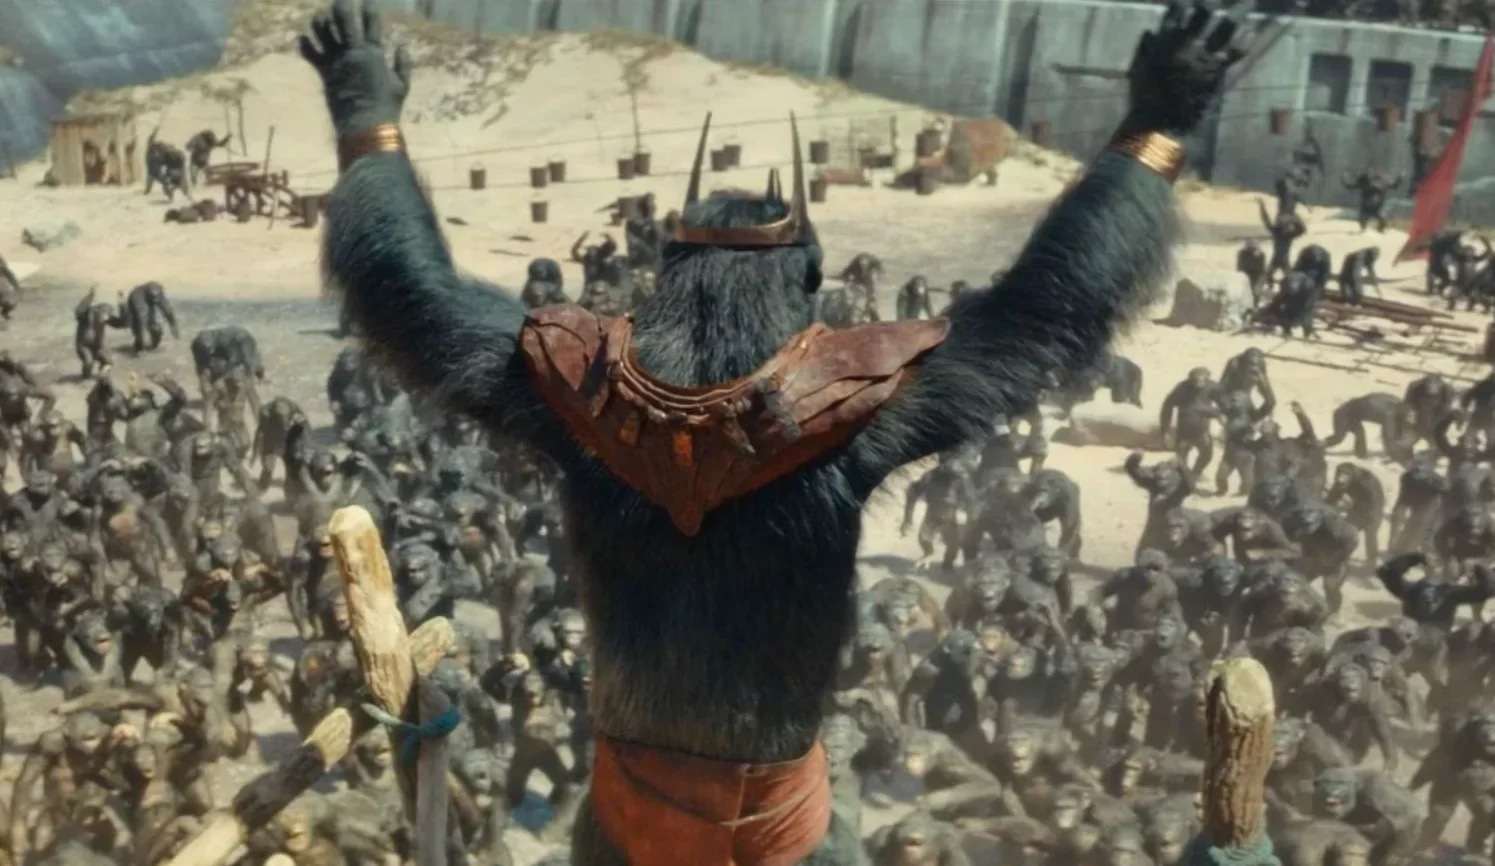 Królestwo Planety Małp z fragmentem ukazującym antagonistę filmu